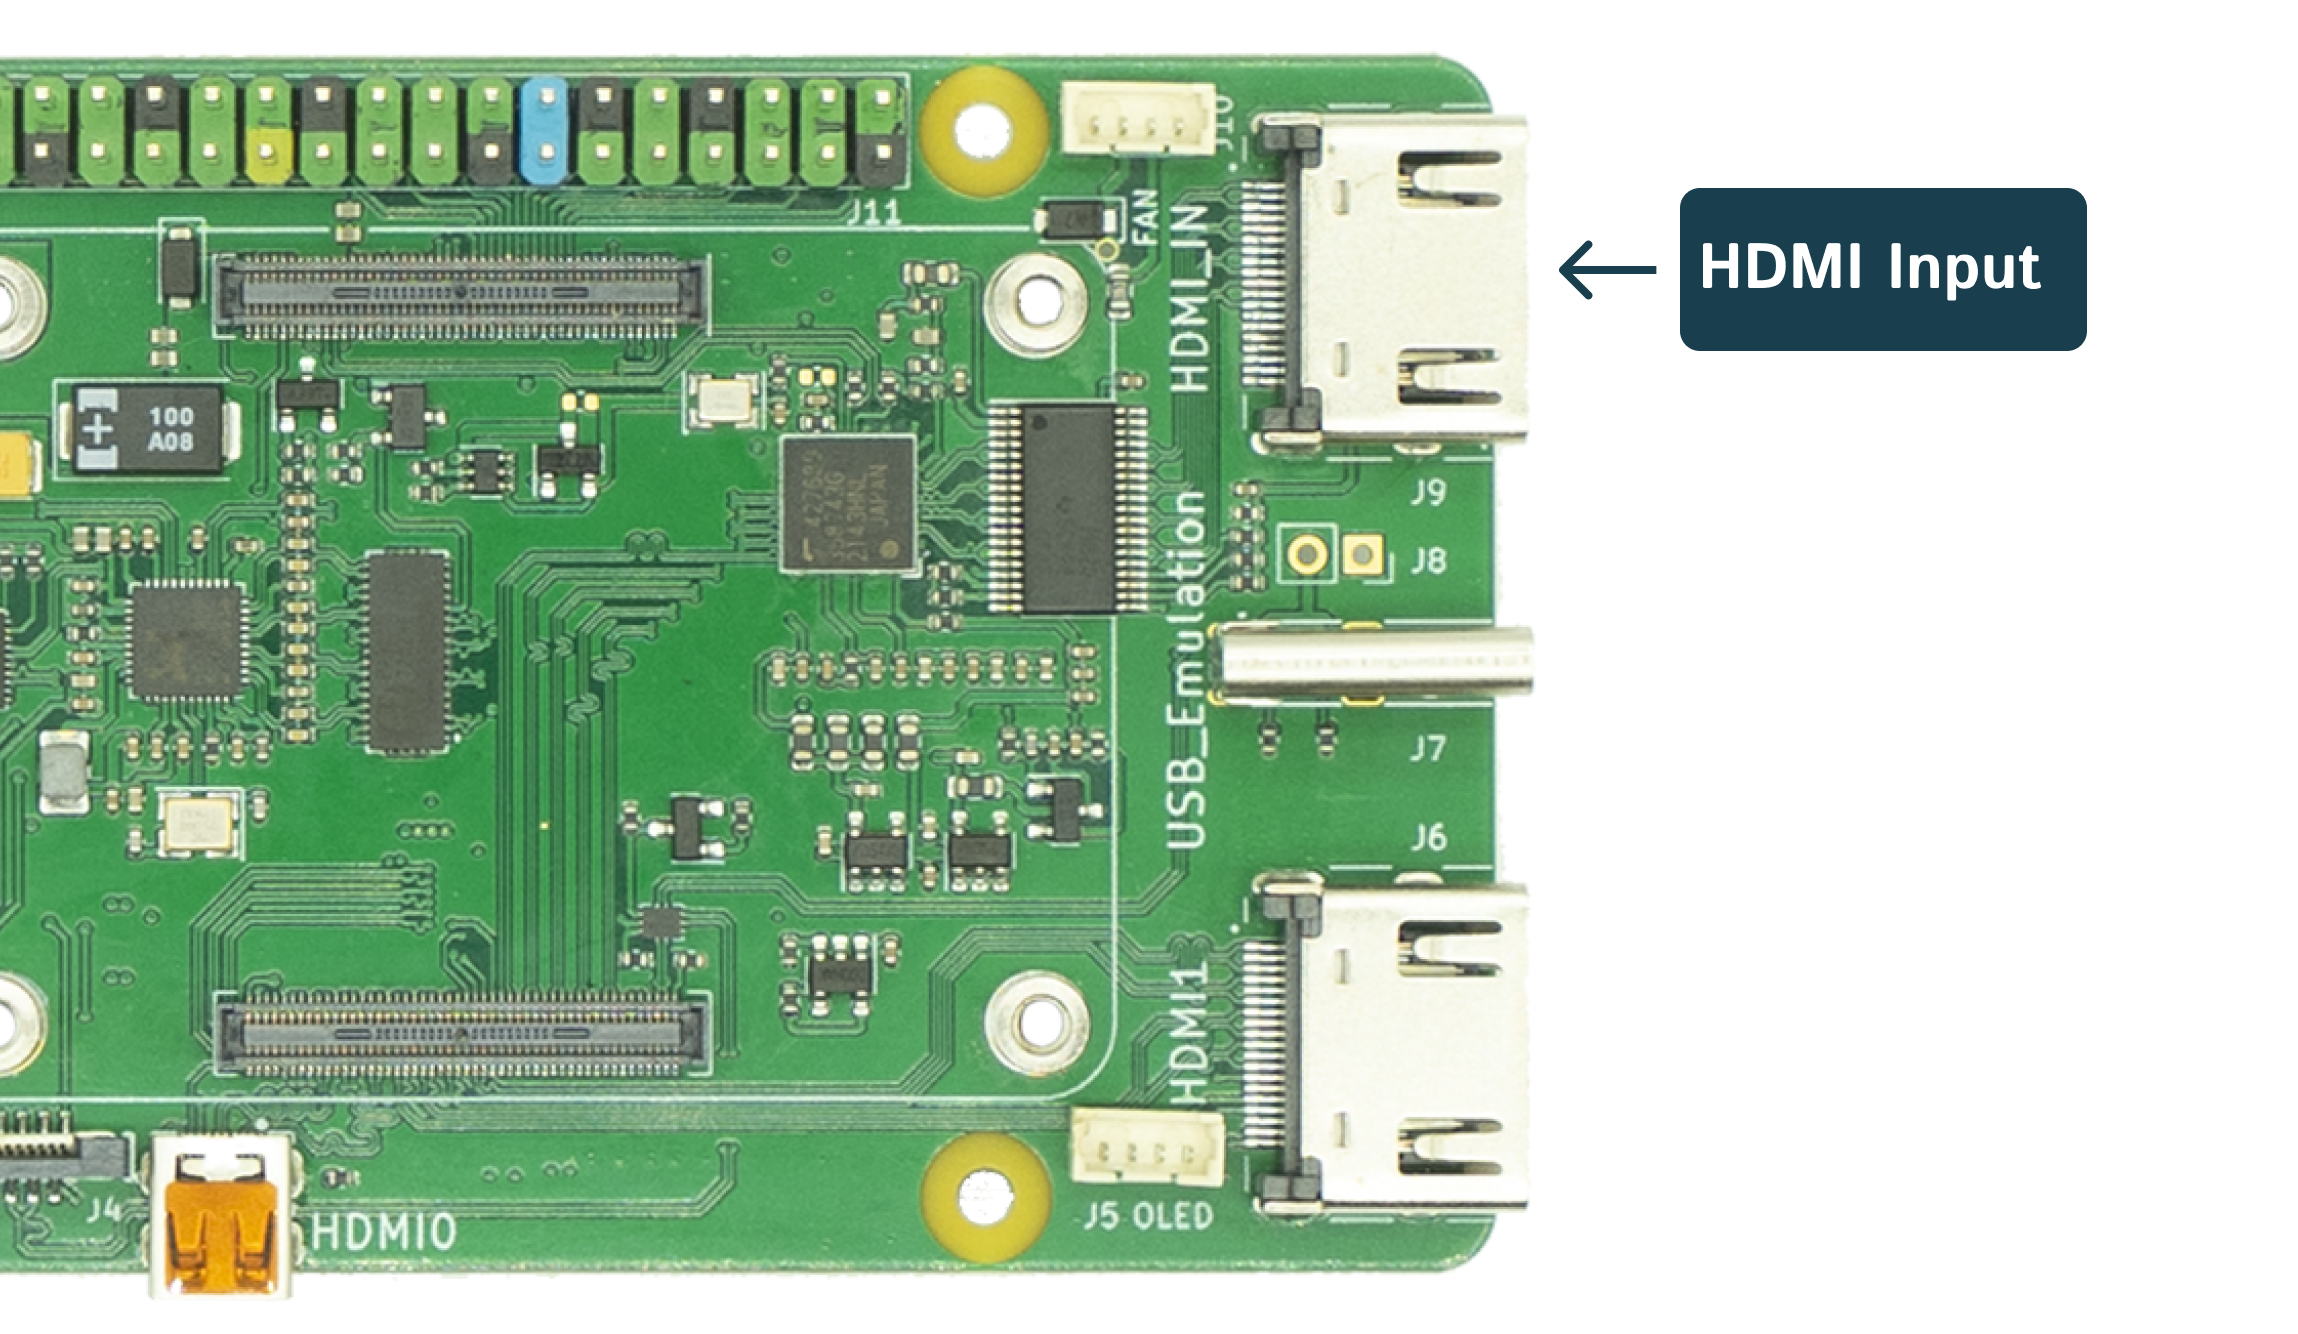 HDMI input indicator